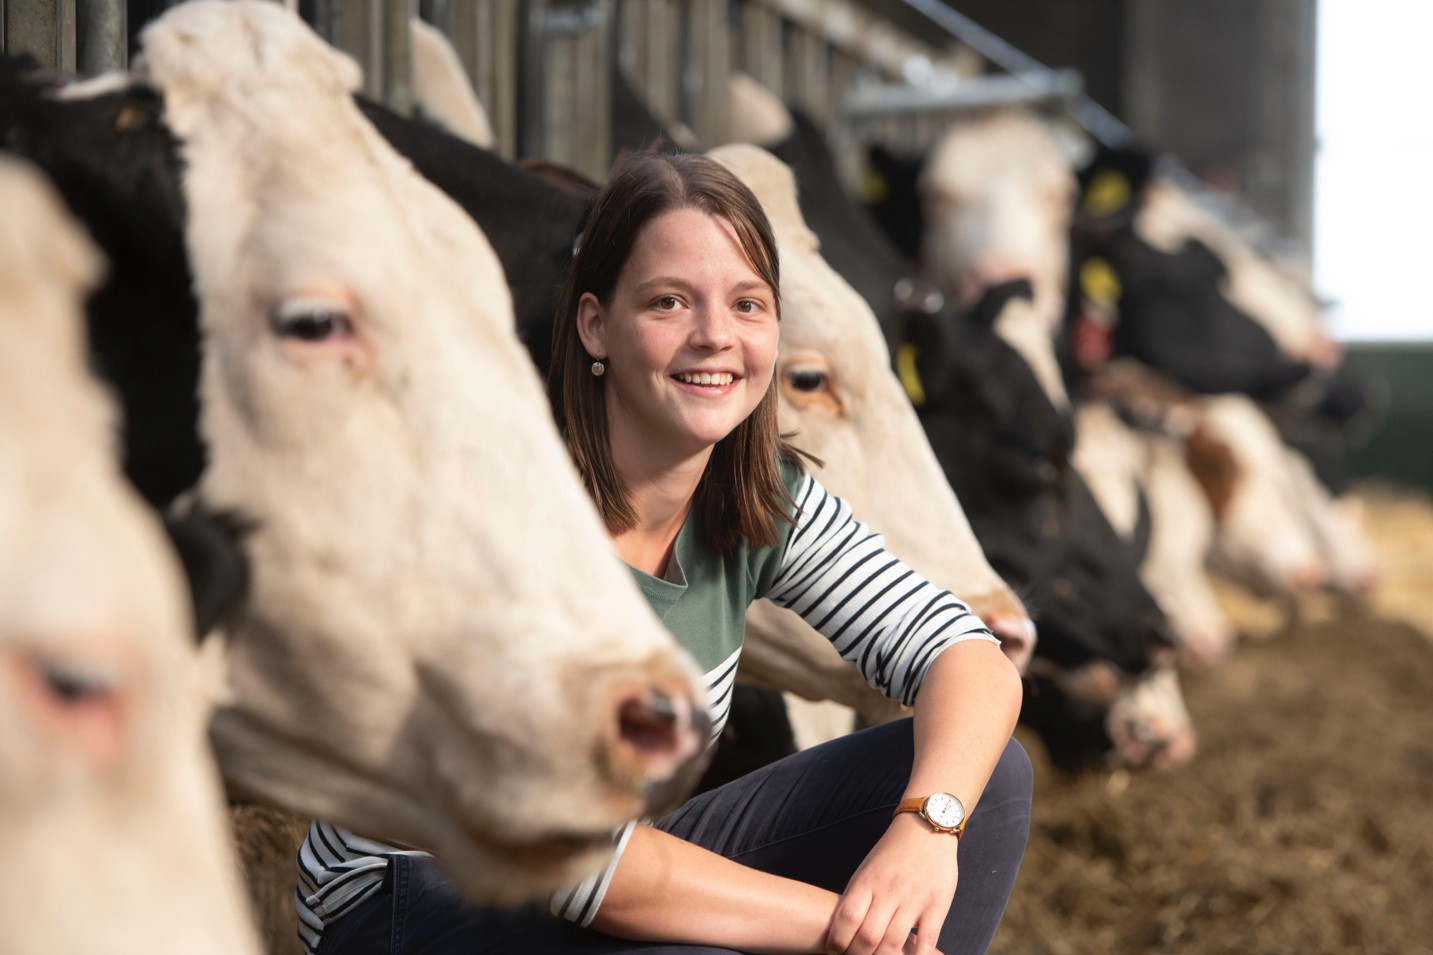 Melkveehouder Judith Heeren-van Dijk uit Den Dam